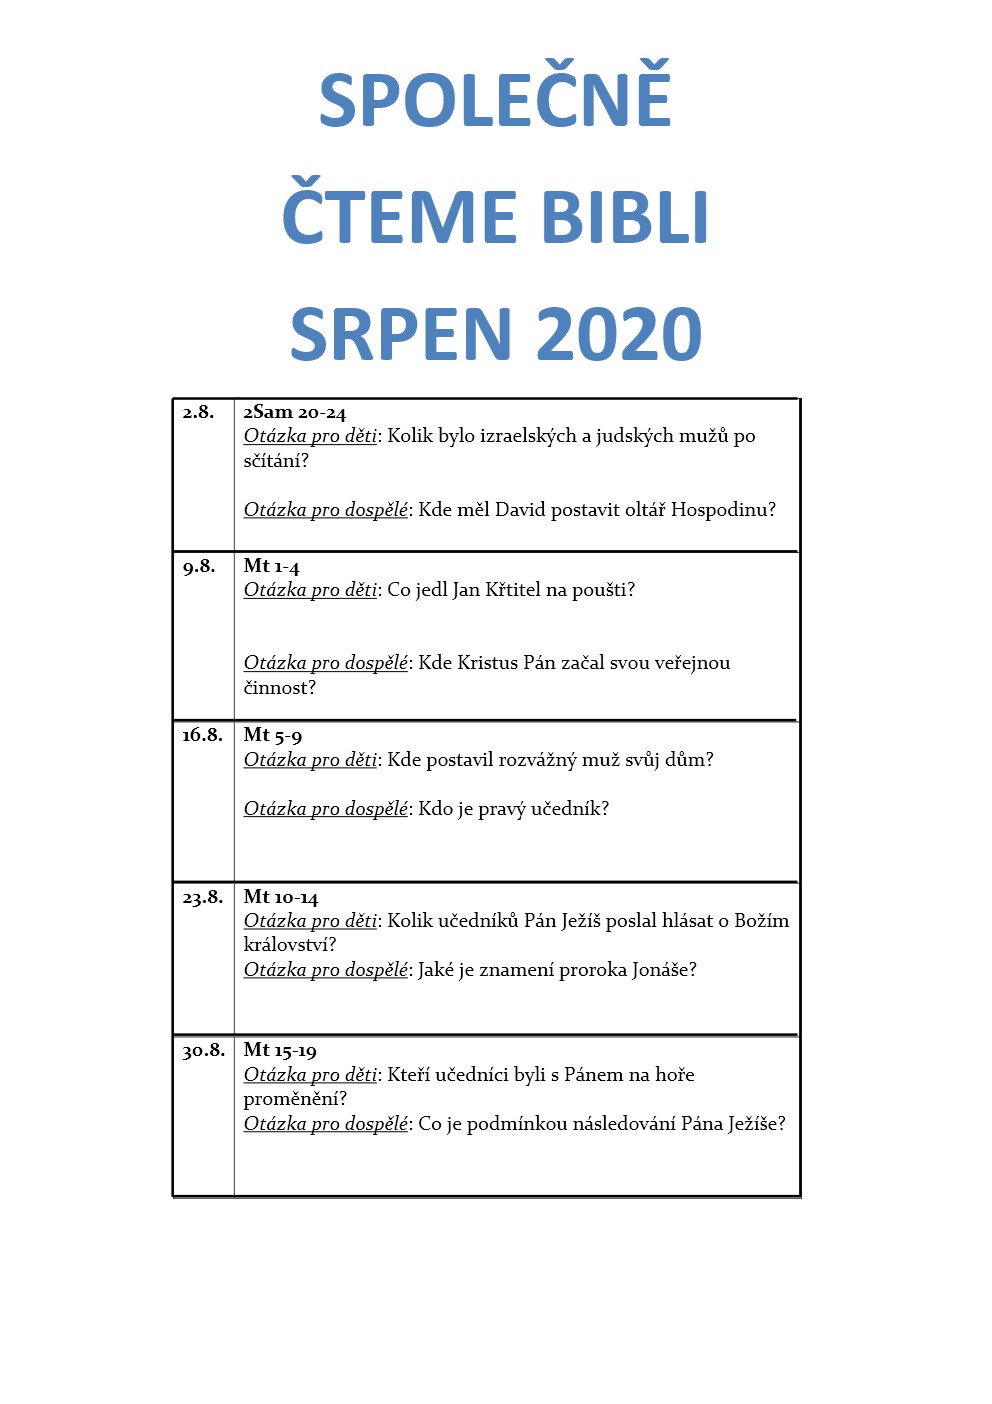 SPOLEČNĚ ČTEME BIBLI 2020-1